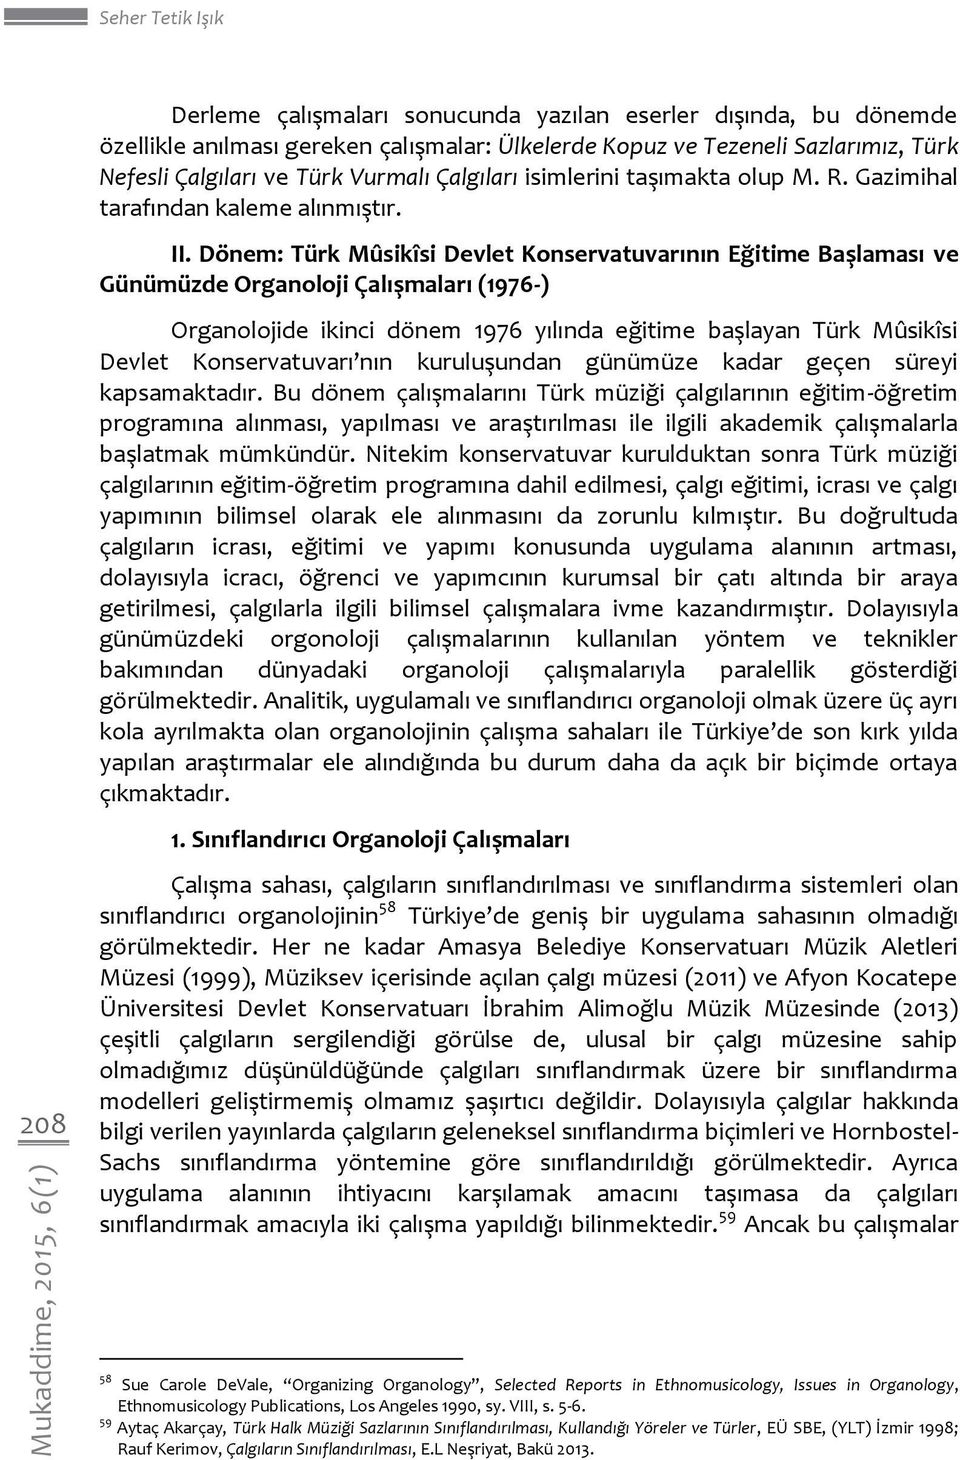 Dönem: Türk Mûsikîsi Devlet Konservatuvarının Eğitime Başlaması ve Günümüzde Organoloji Çalışmaları (1976-) Organolojide ikinci dönem 1976 yılında eğitime başlayan Türk Mûsikîsi Devlet Konservatuvarı